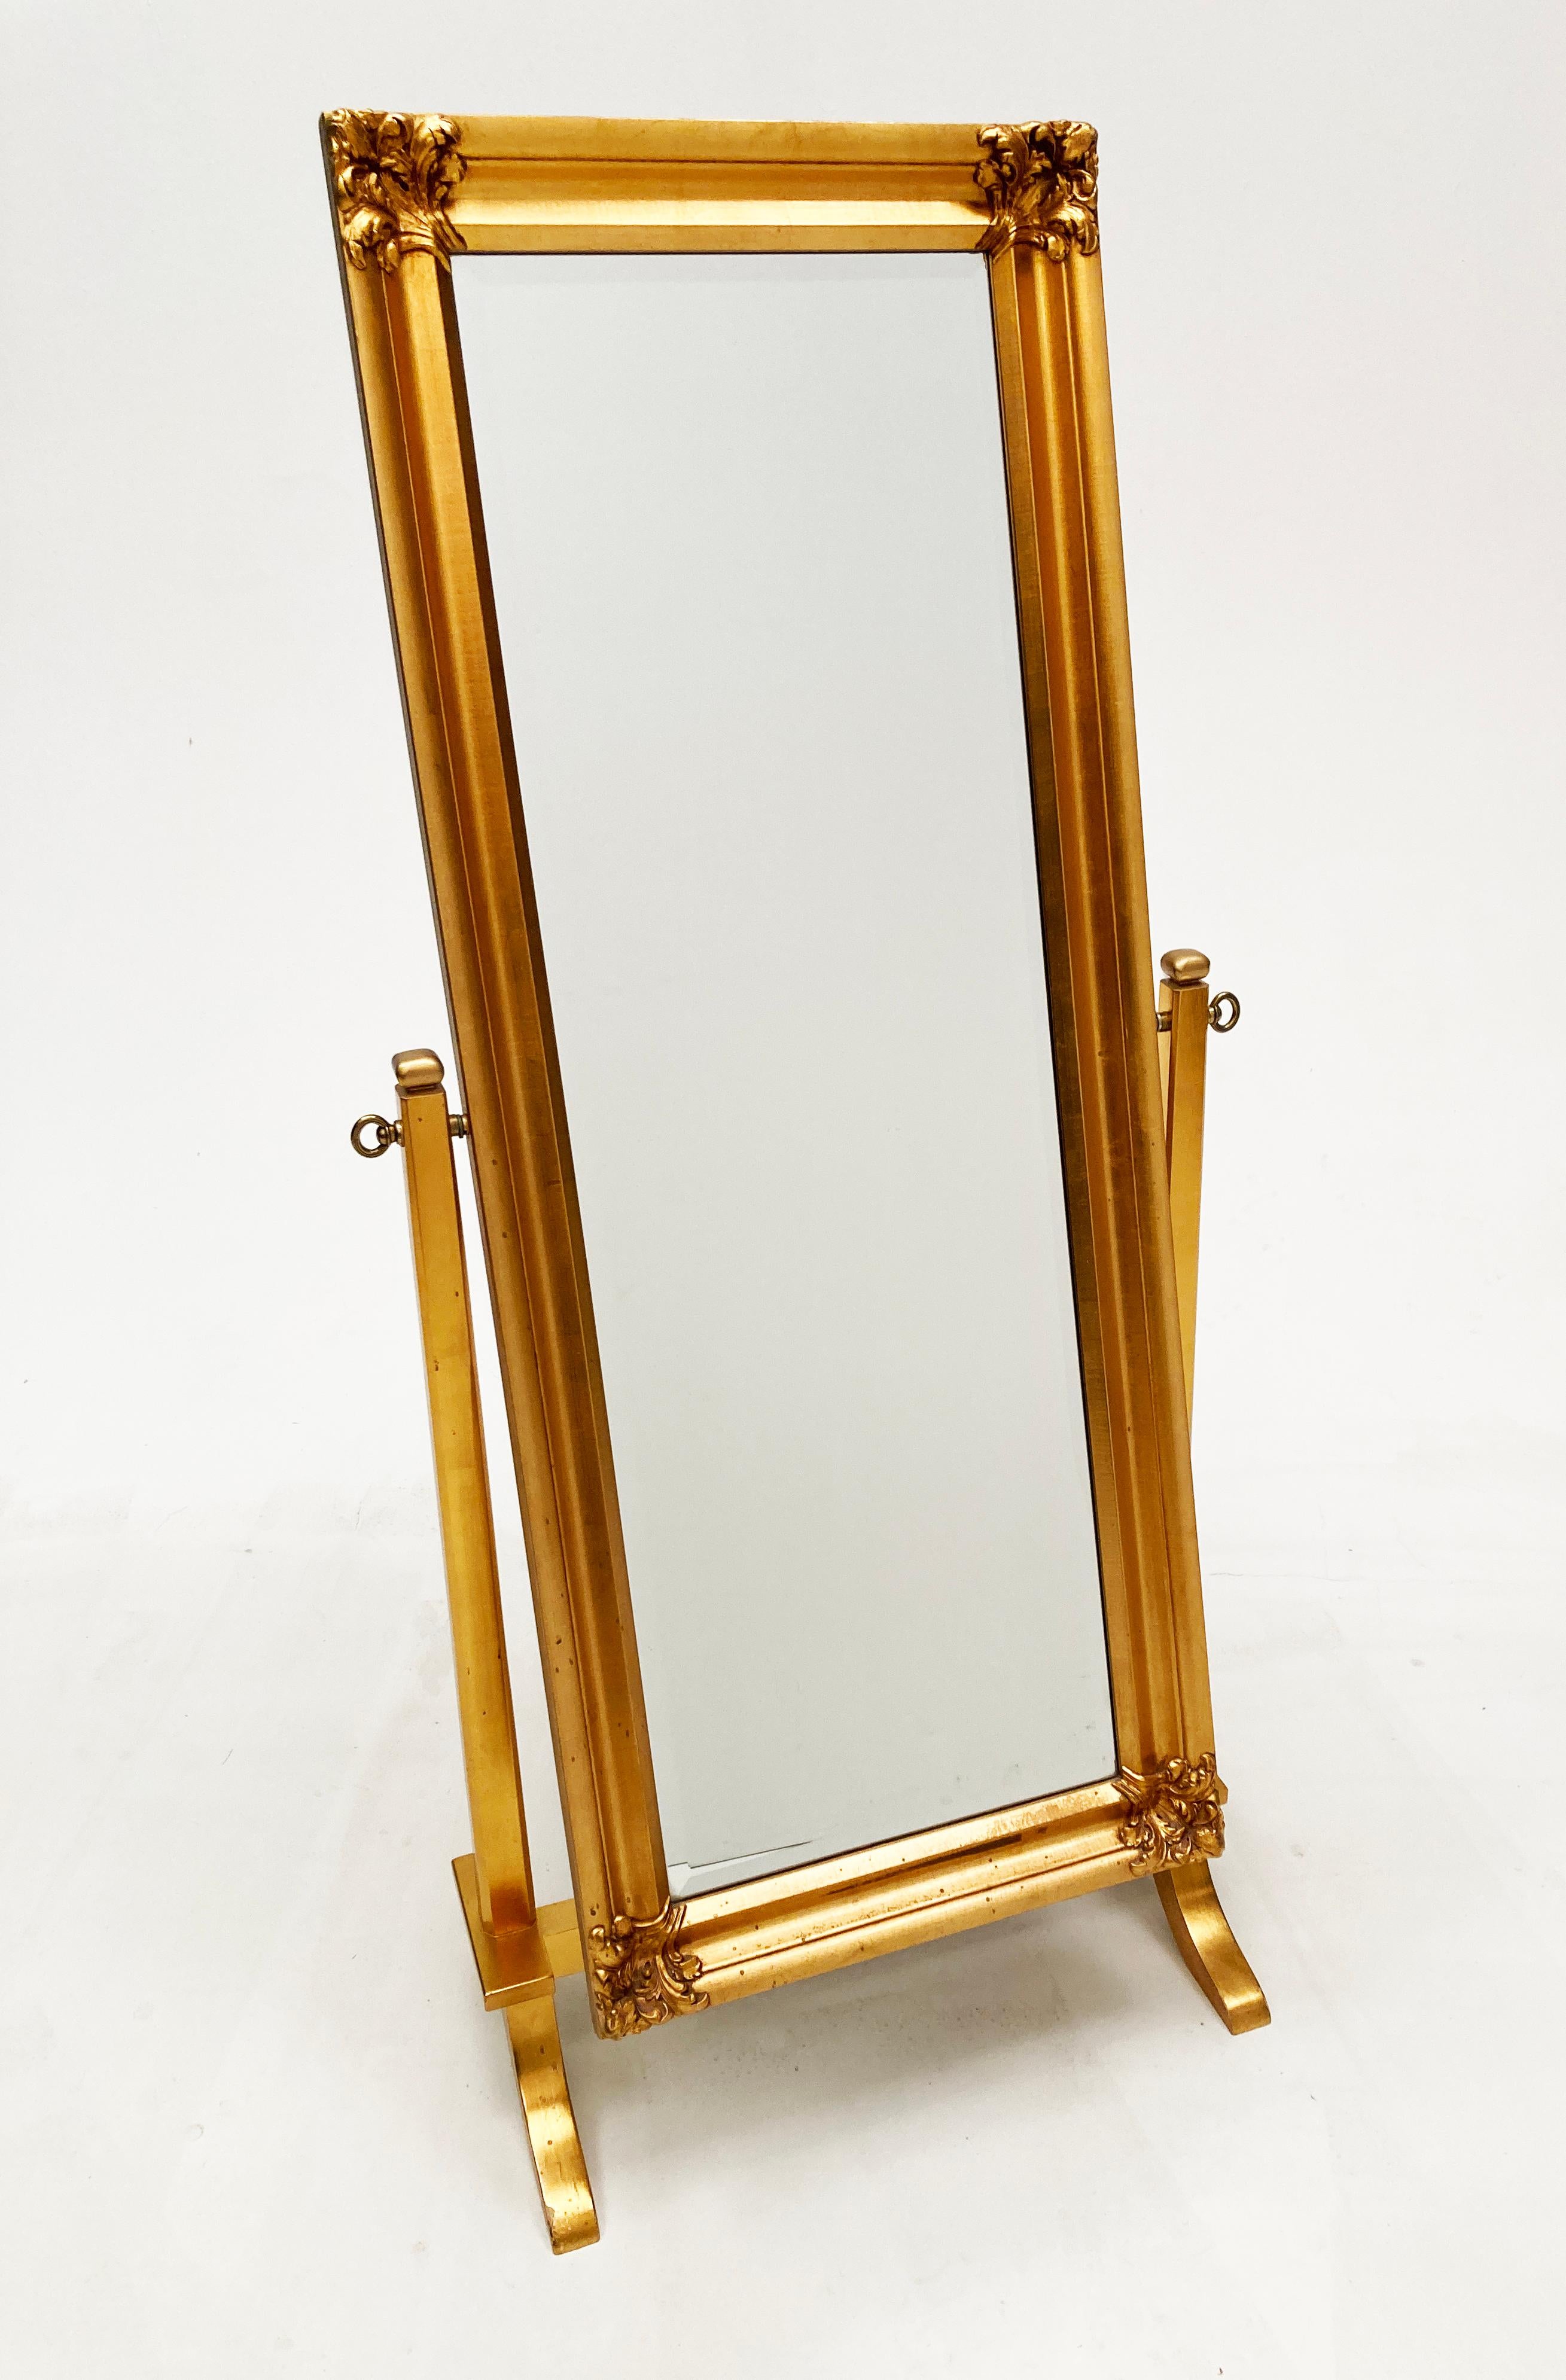 Der fabelhafte Chevalspiegel aus vergoldetem Holz versprüht eine französische Atmosphäre mit einem Hauch von Hollywood Regency. Dieser nach Maß gefertigte Spiegel aus abgeschrägtem Glas steht auf einem vierbeinigen Sockel. Der Rahmen des Spiegels